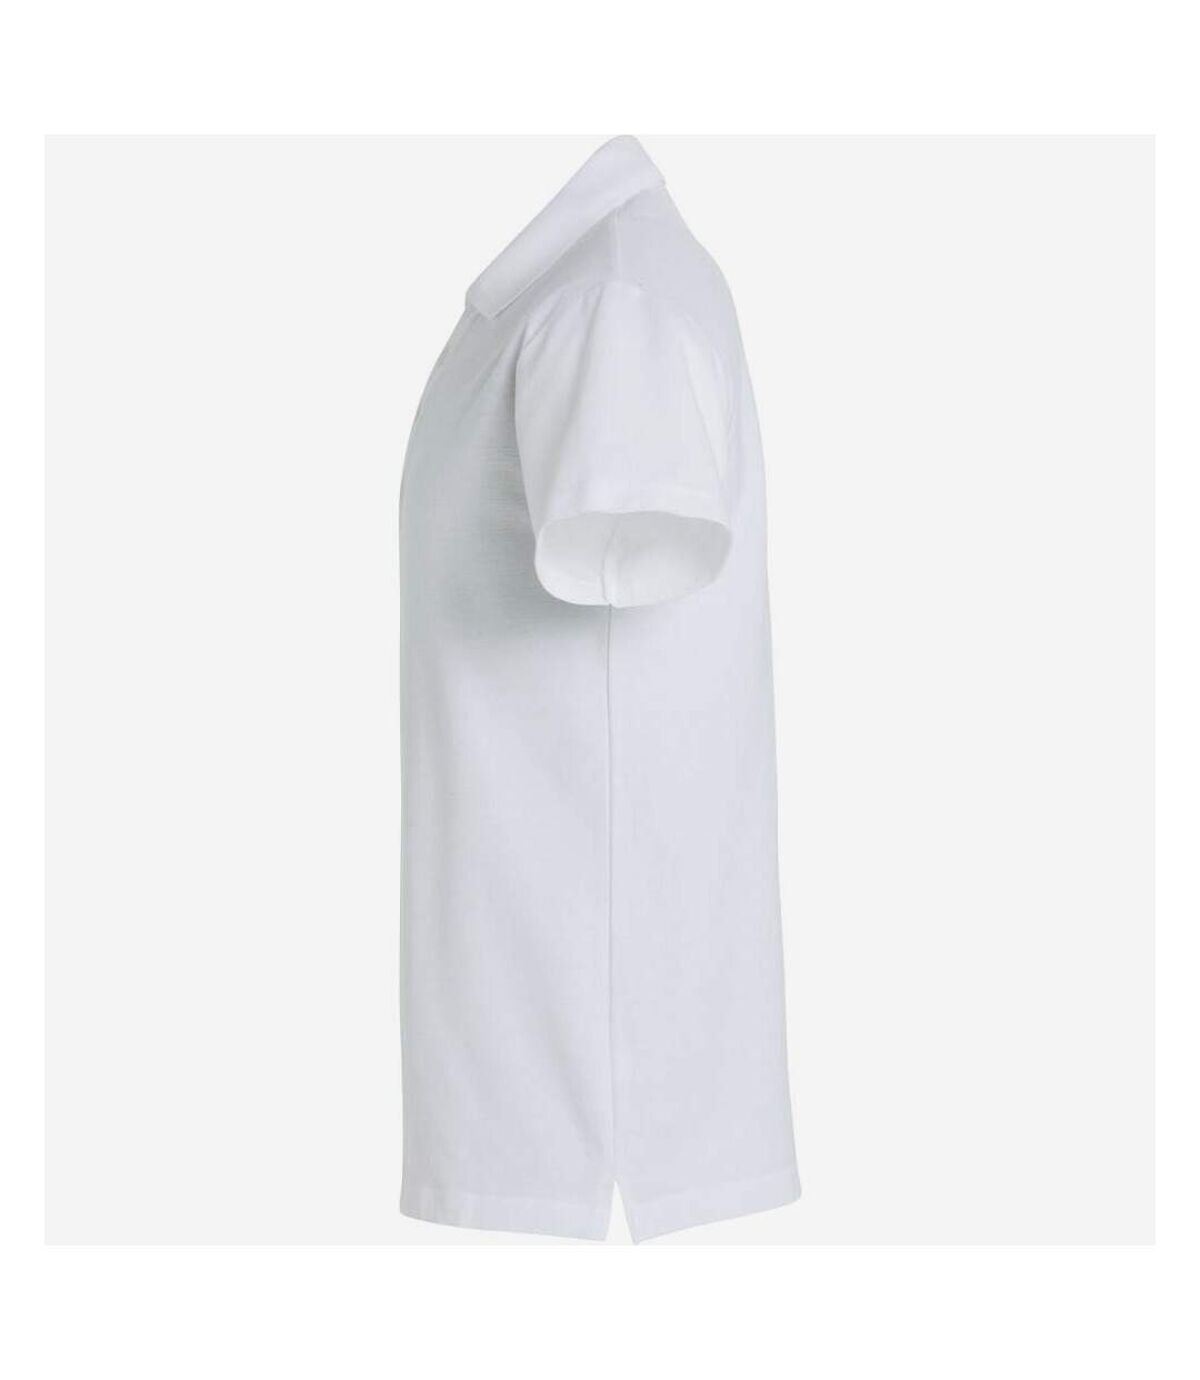 Clique Mens Basic Polo Shirt (White)